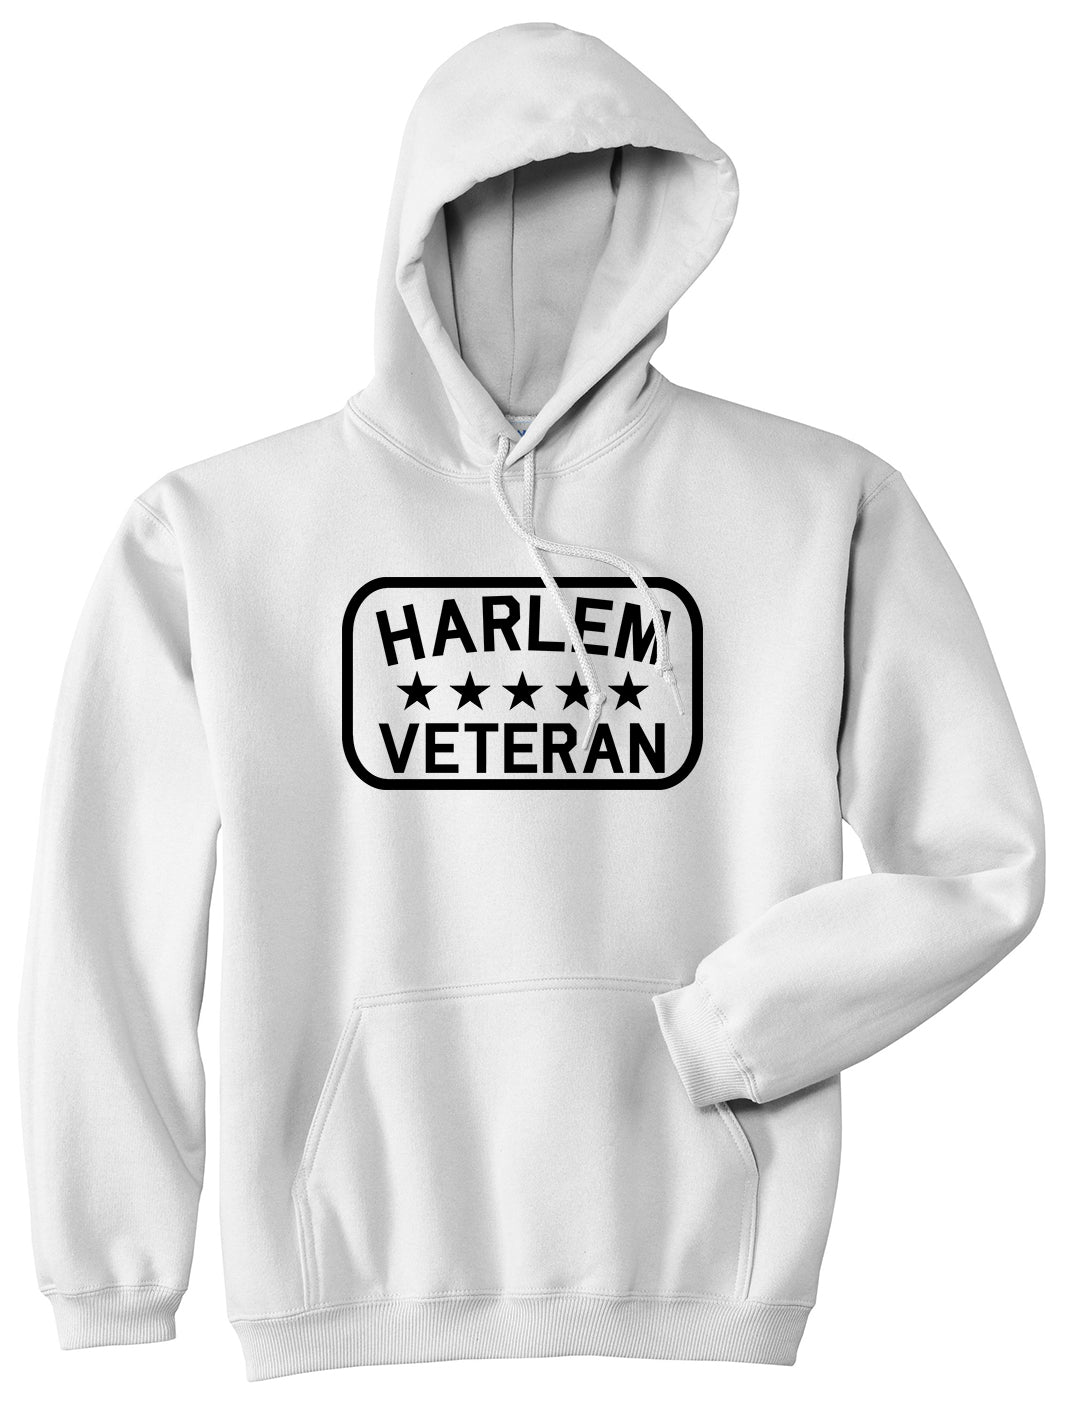 Harlem Veteran Mens Pullover Hoodie White